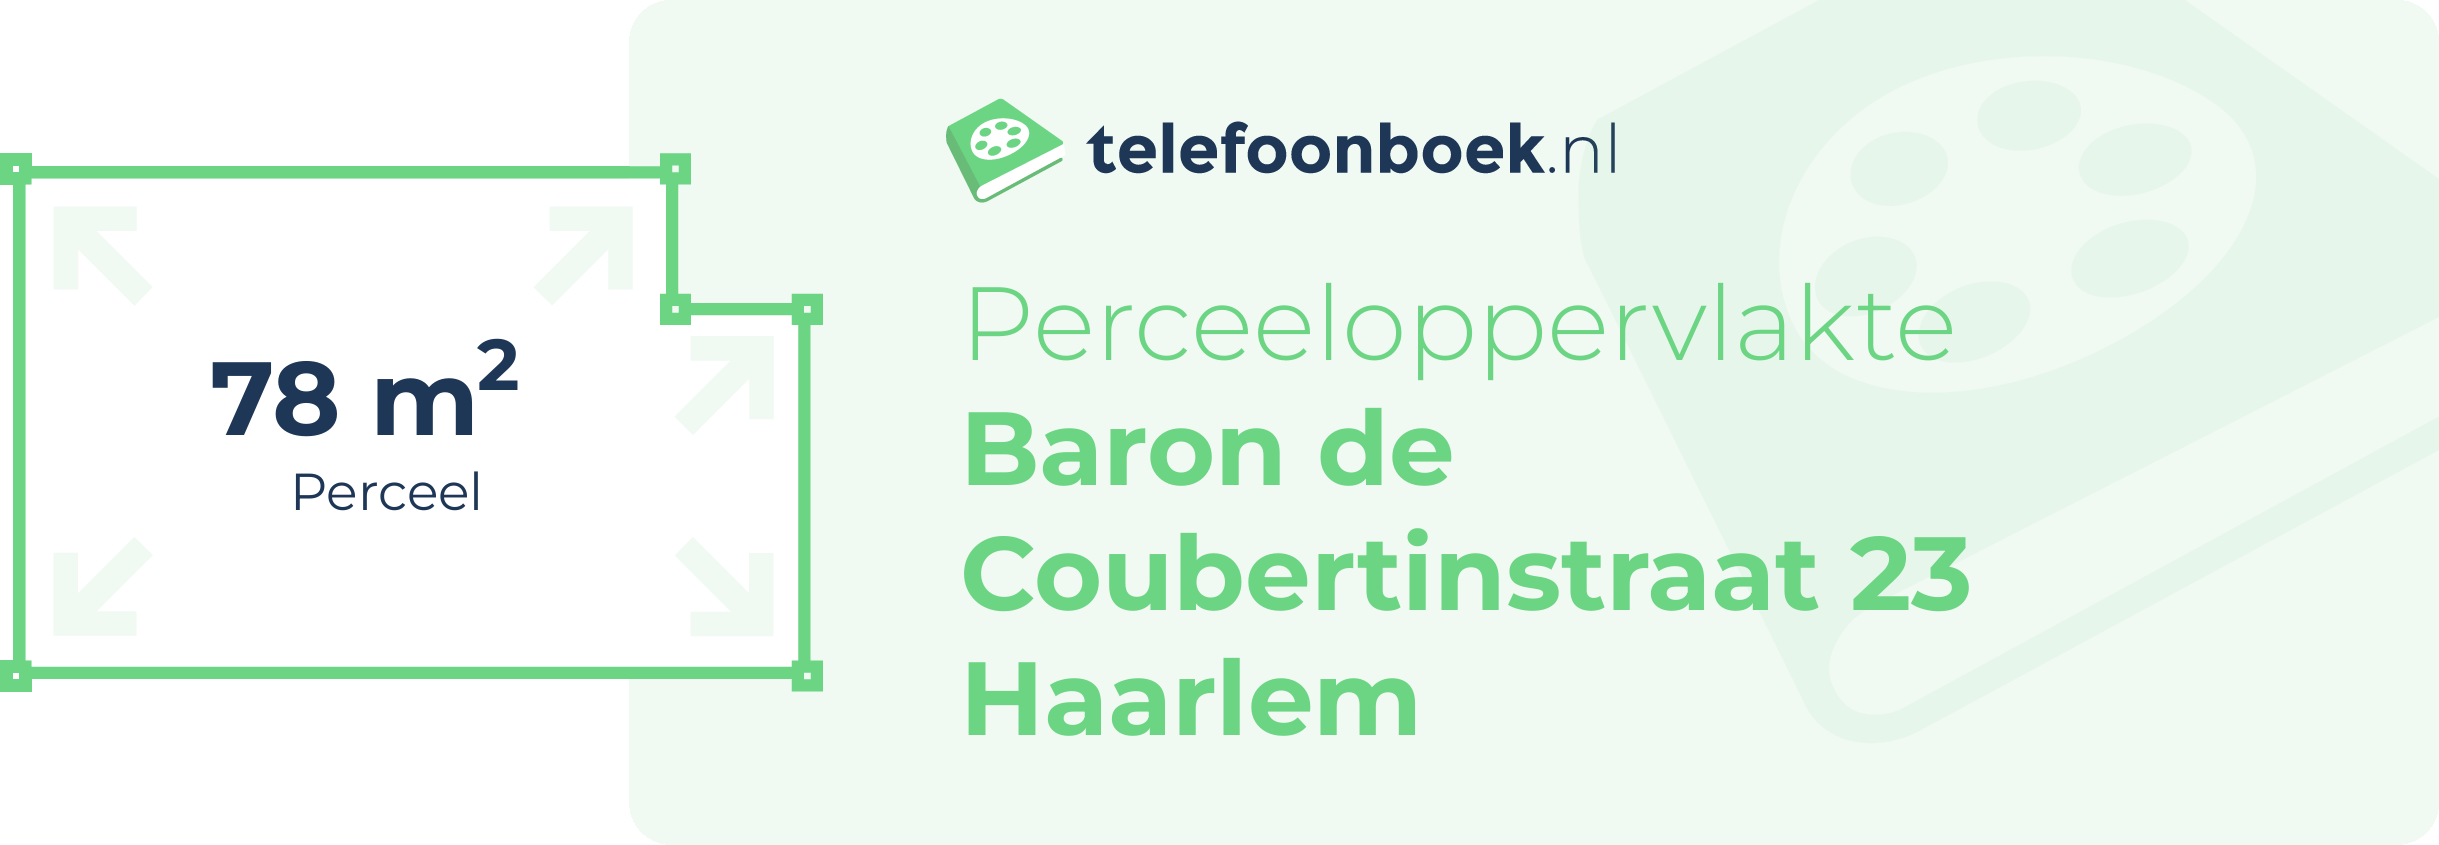 Perceeloppervlakte Baron De Coubertinstraat 23 Haarlem